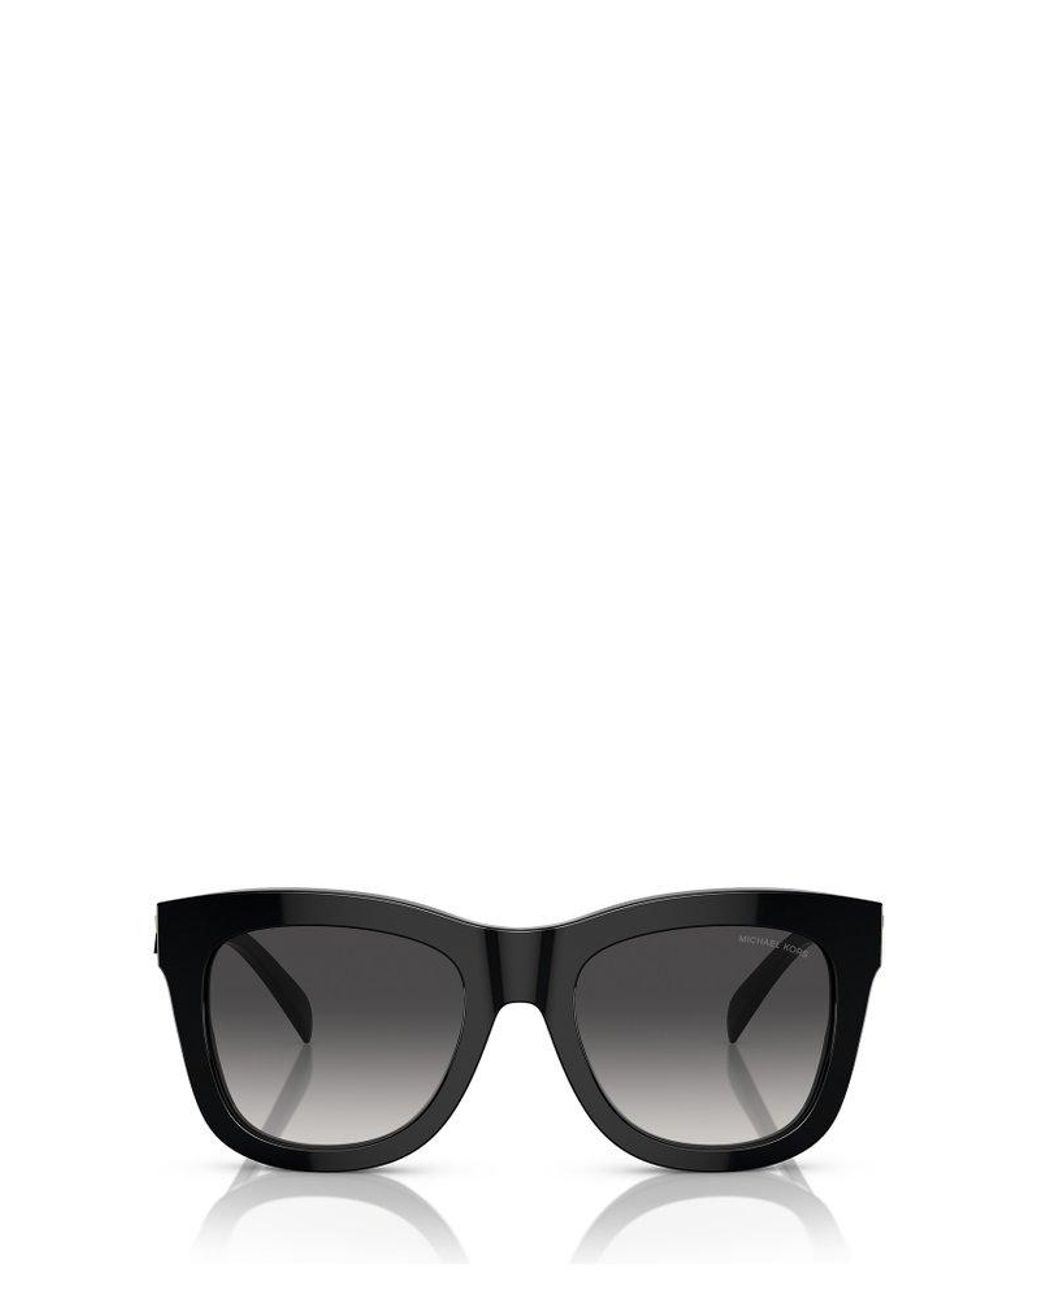 Michael Kors Square Frame Sunglasses in Black | Lyst UK